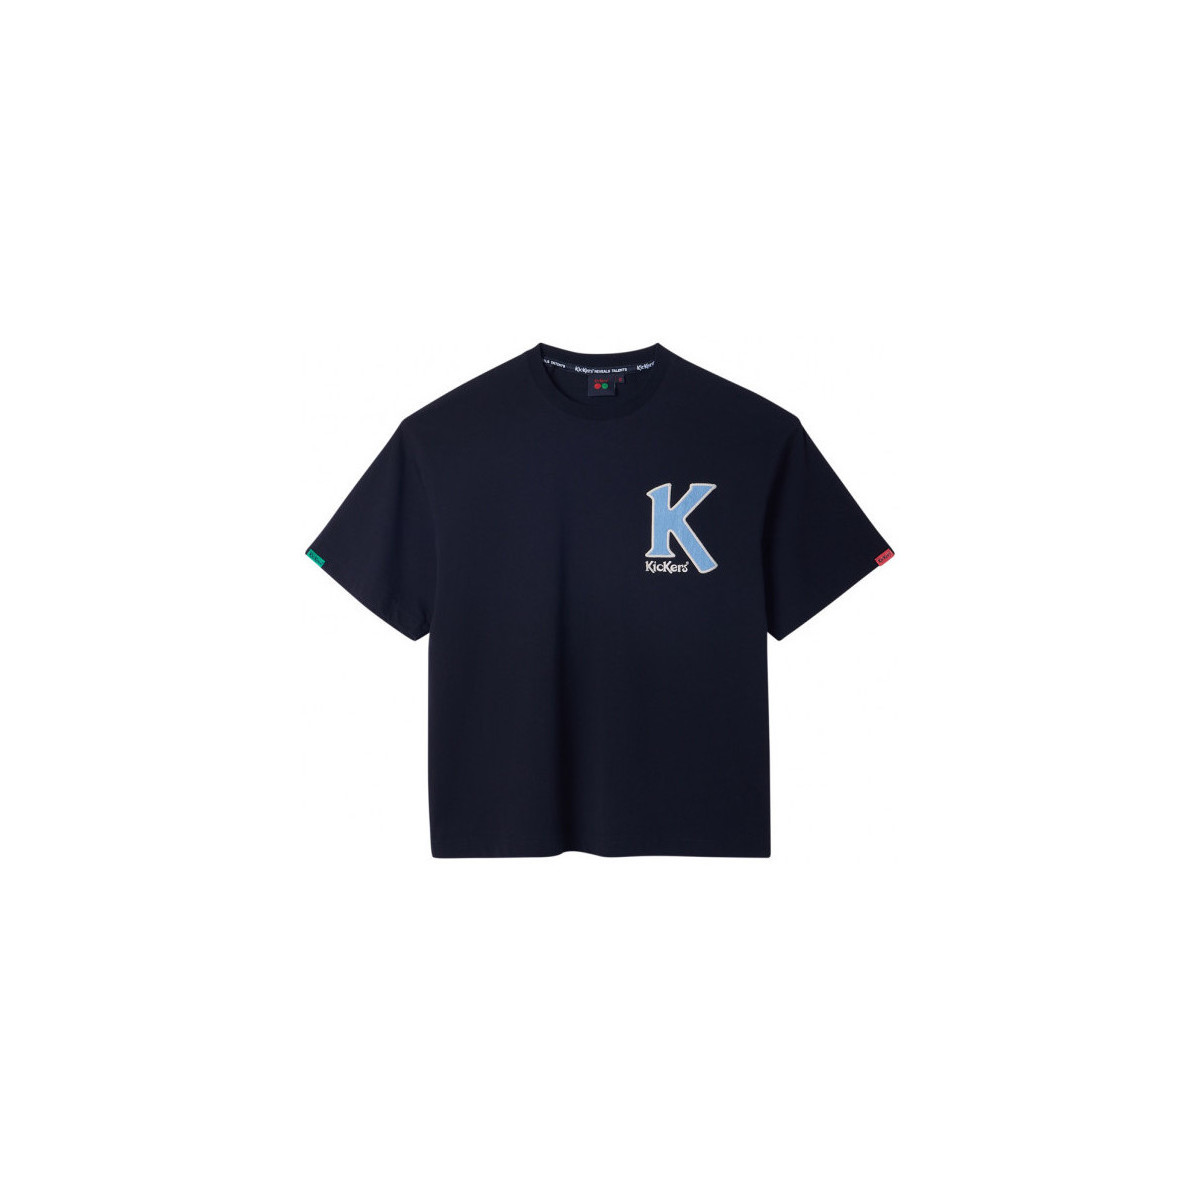 textil Tops y Camisetas Kickers Big K T-shirt Negro